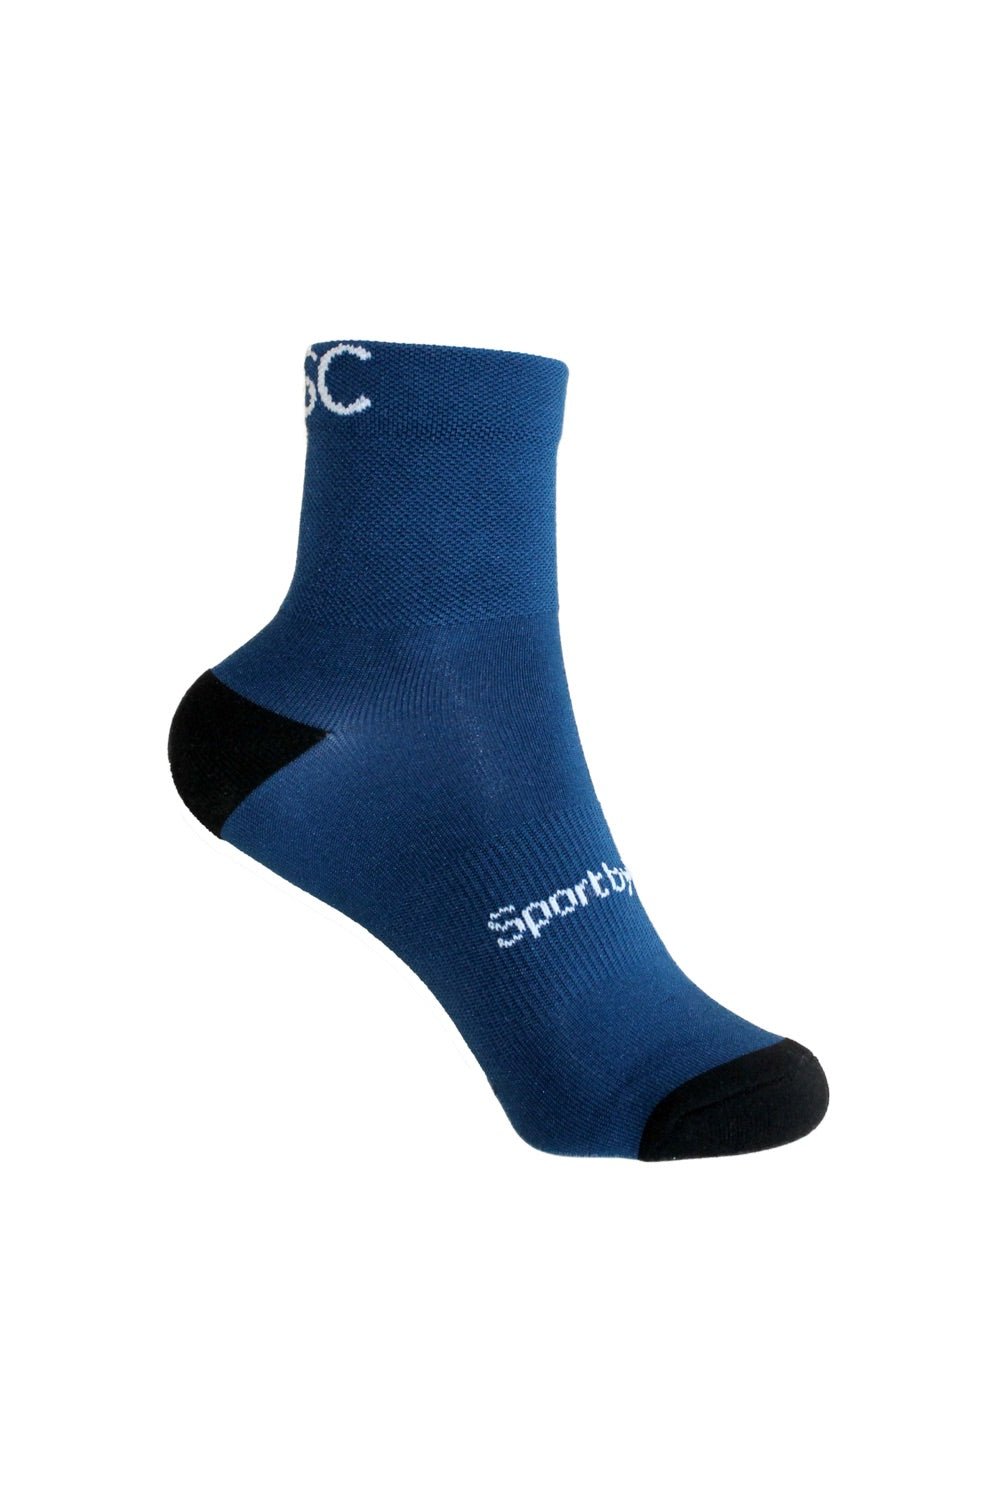 Chaussettes fibre de ricin / technologie greenfil® - Socks-1 - Bleu - fairytale